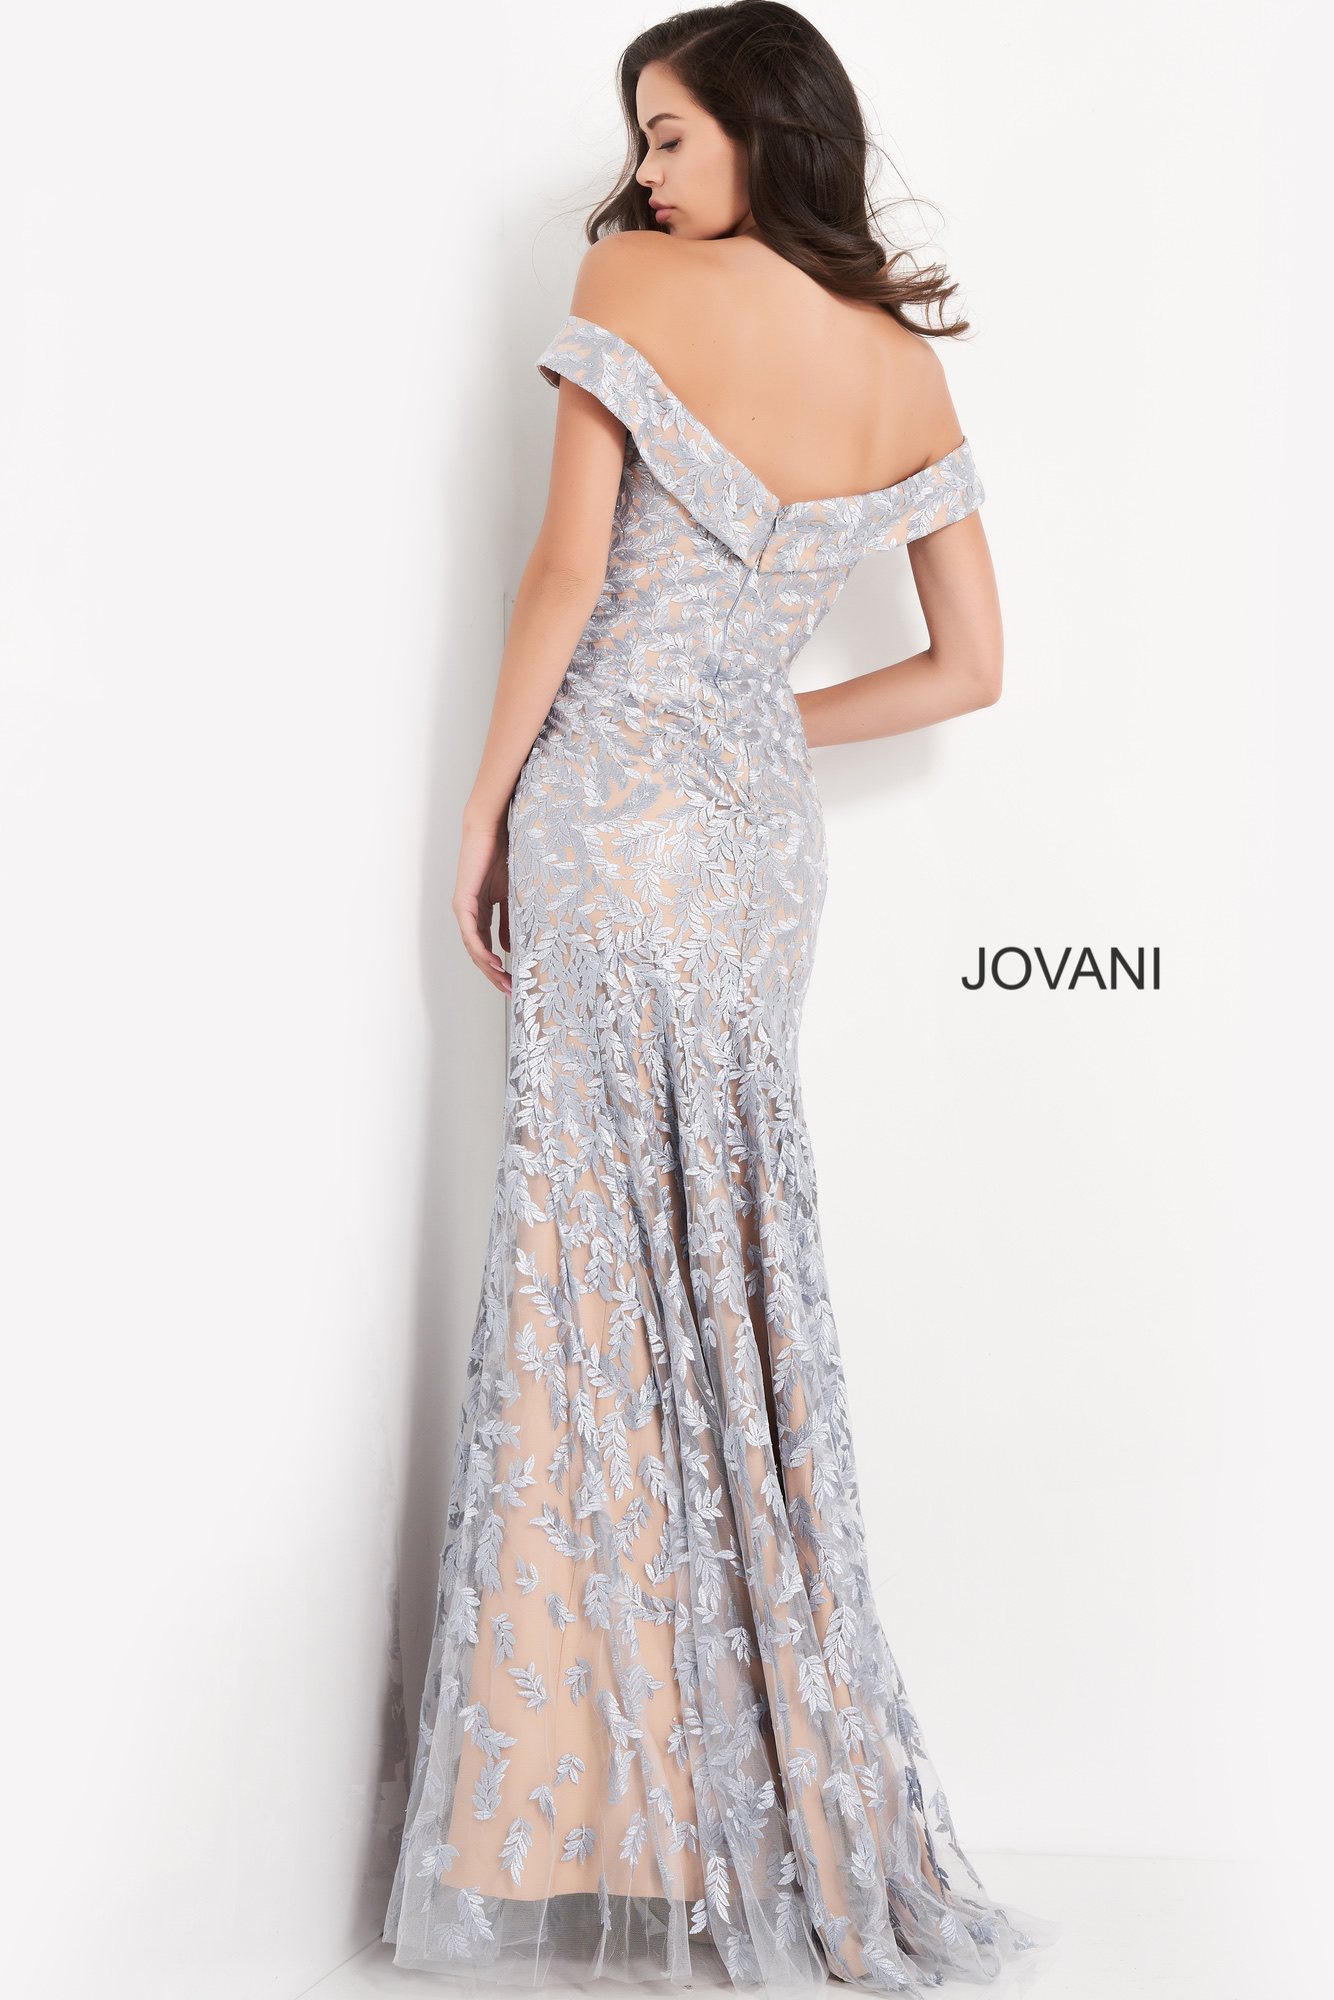 Jovani 49634 Light Blue Off the Shoulder Mother of the Bride Dress